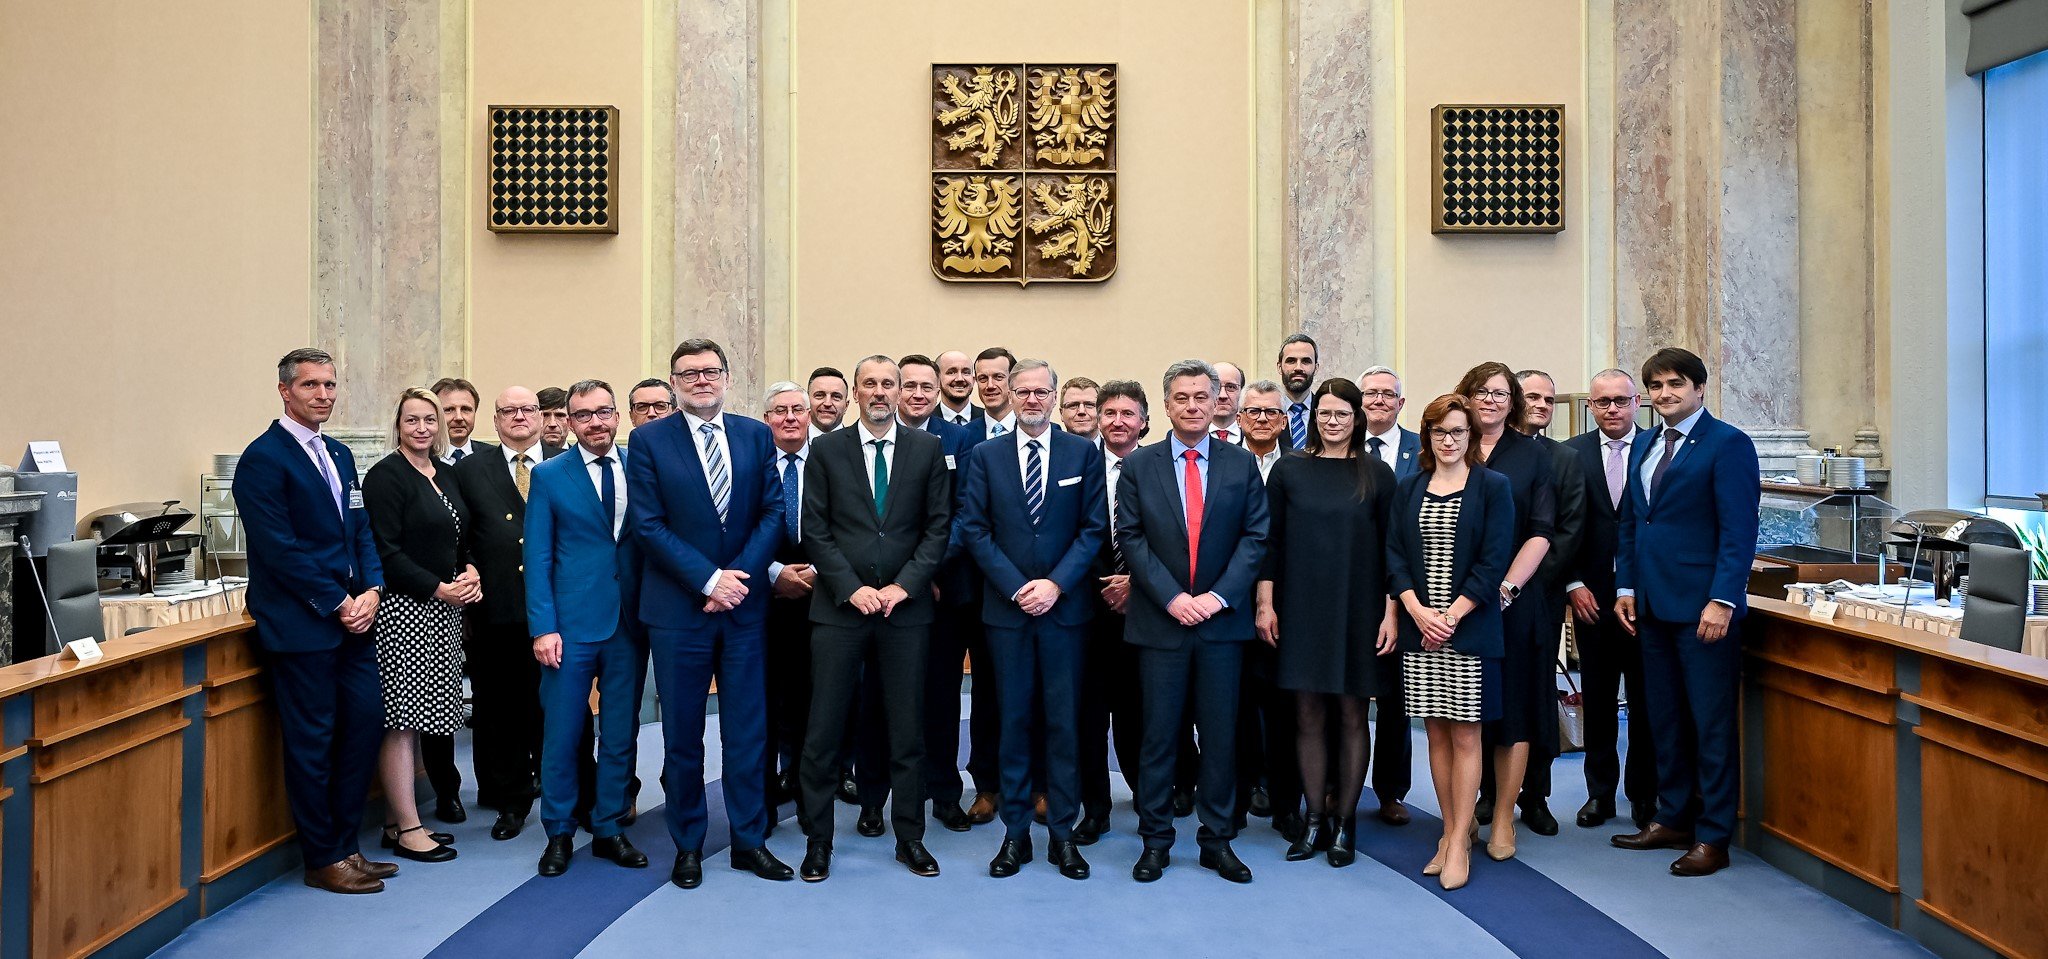 Premiér Petr Fiala se setkal se zástupci profesních komor